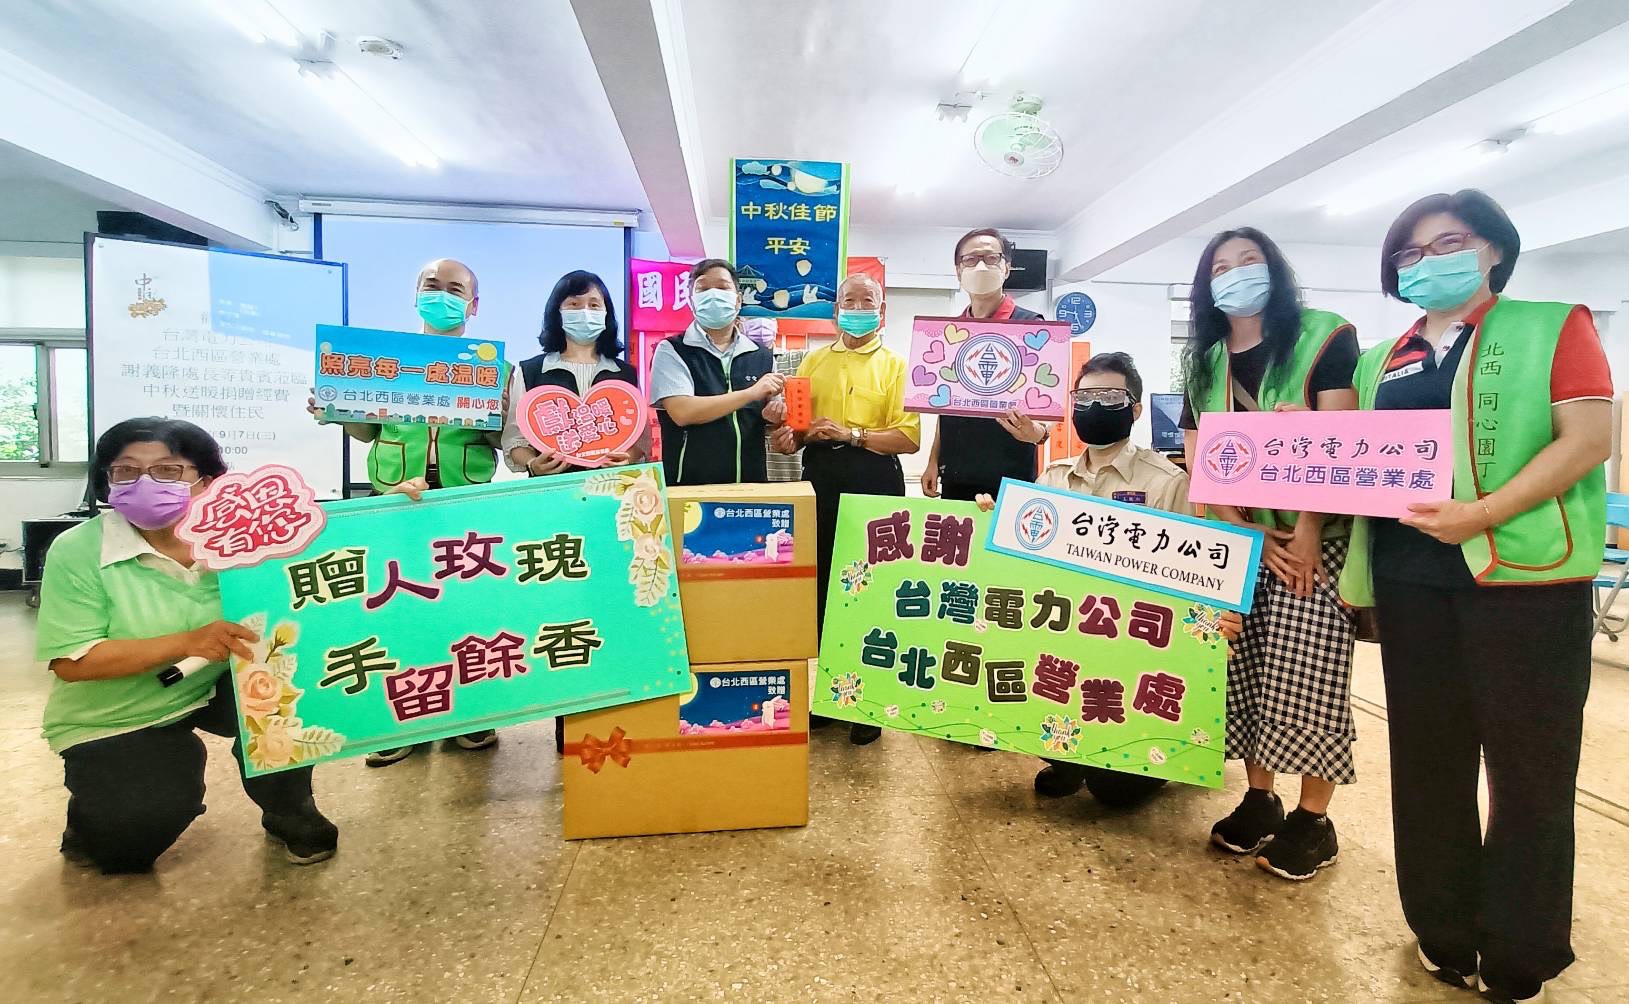 「台灣電力公司台北西區營業處」捐贈台北榮家改善生活設施經費的捐贈儀式